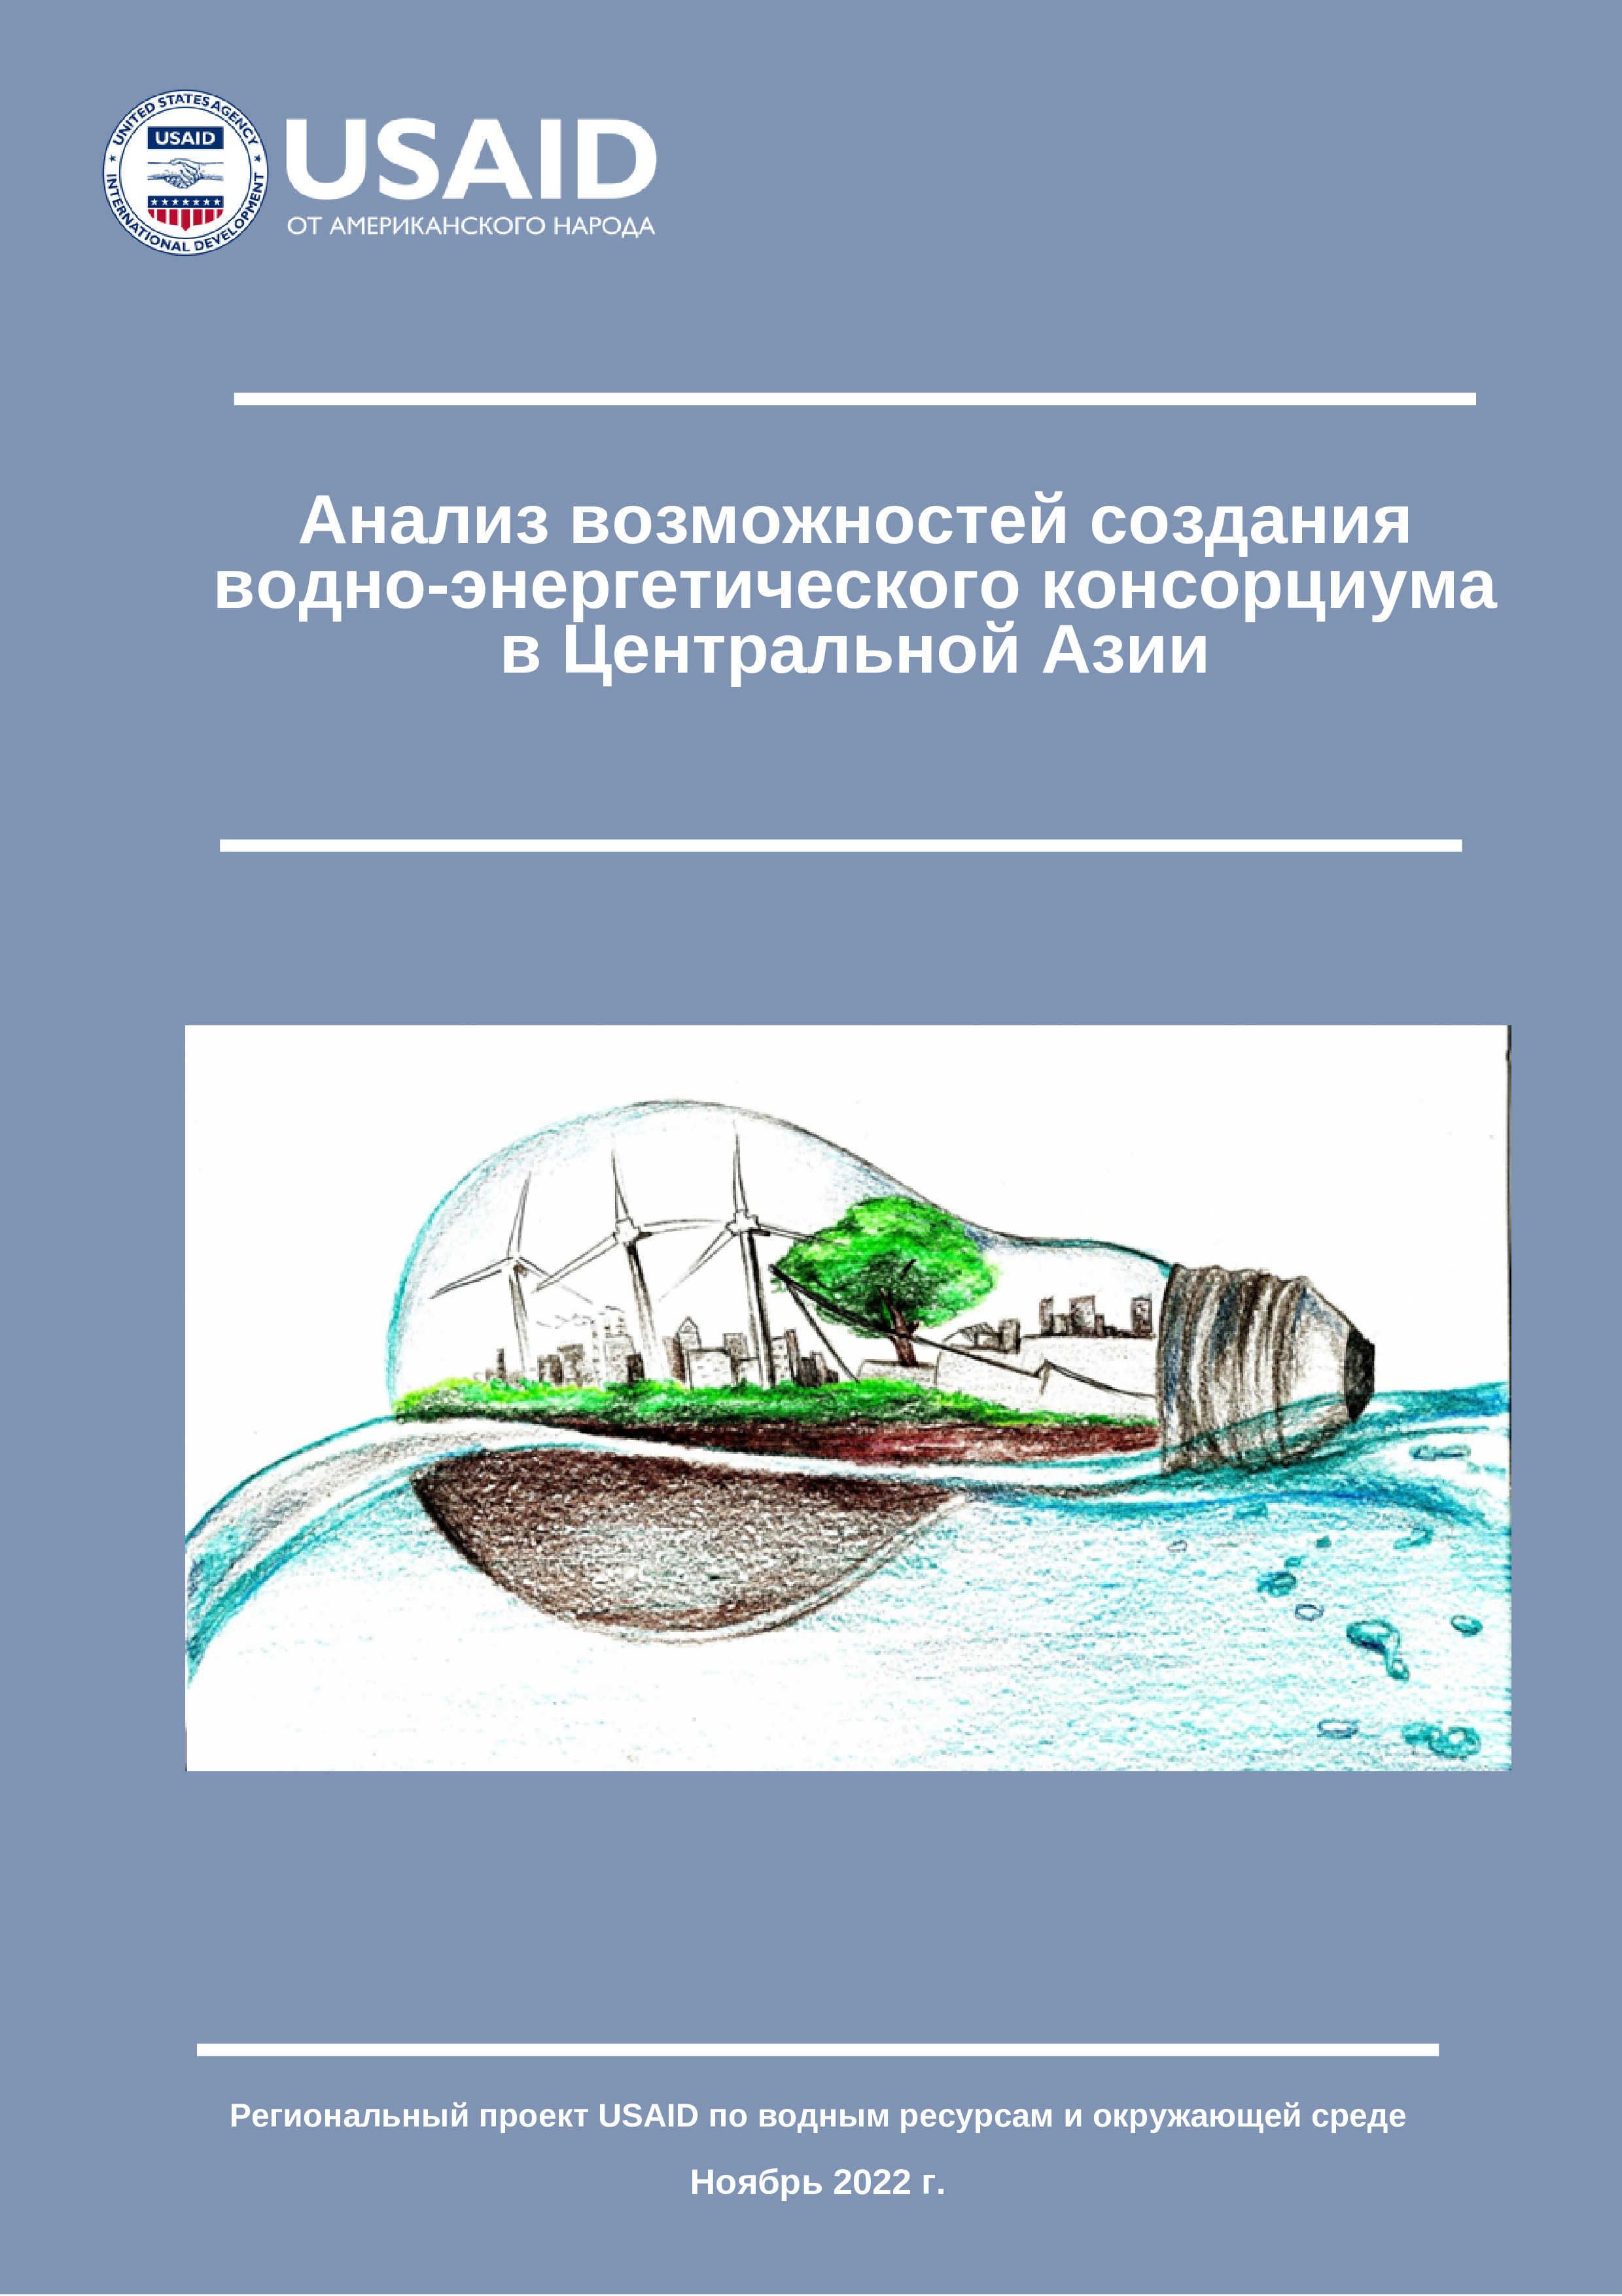 Анализ возможностей создания водно-энергетического консорциума в Центральной Азии, 2022